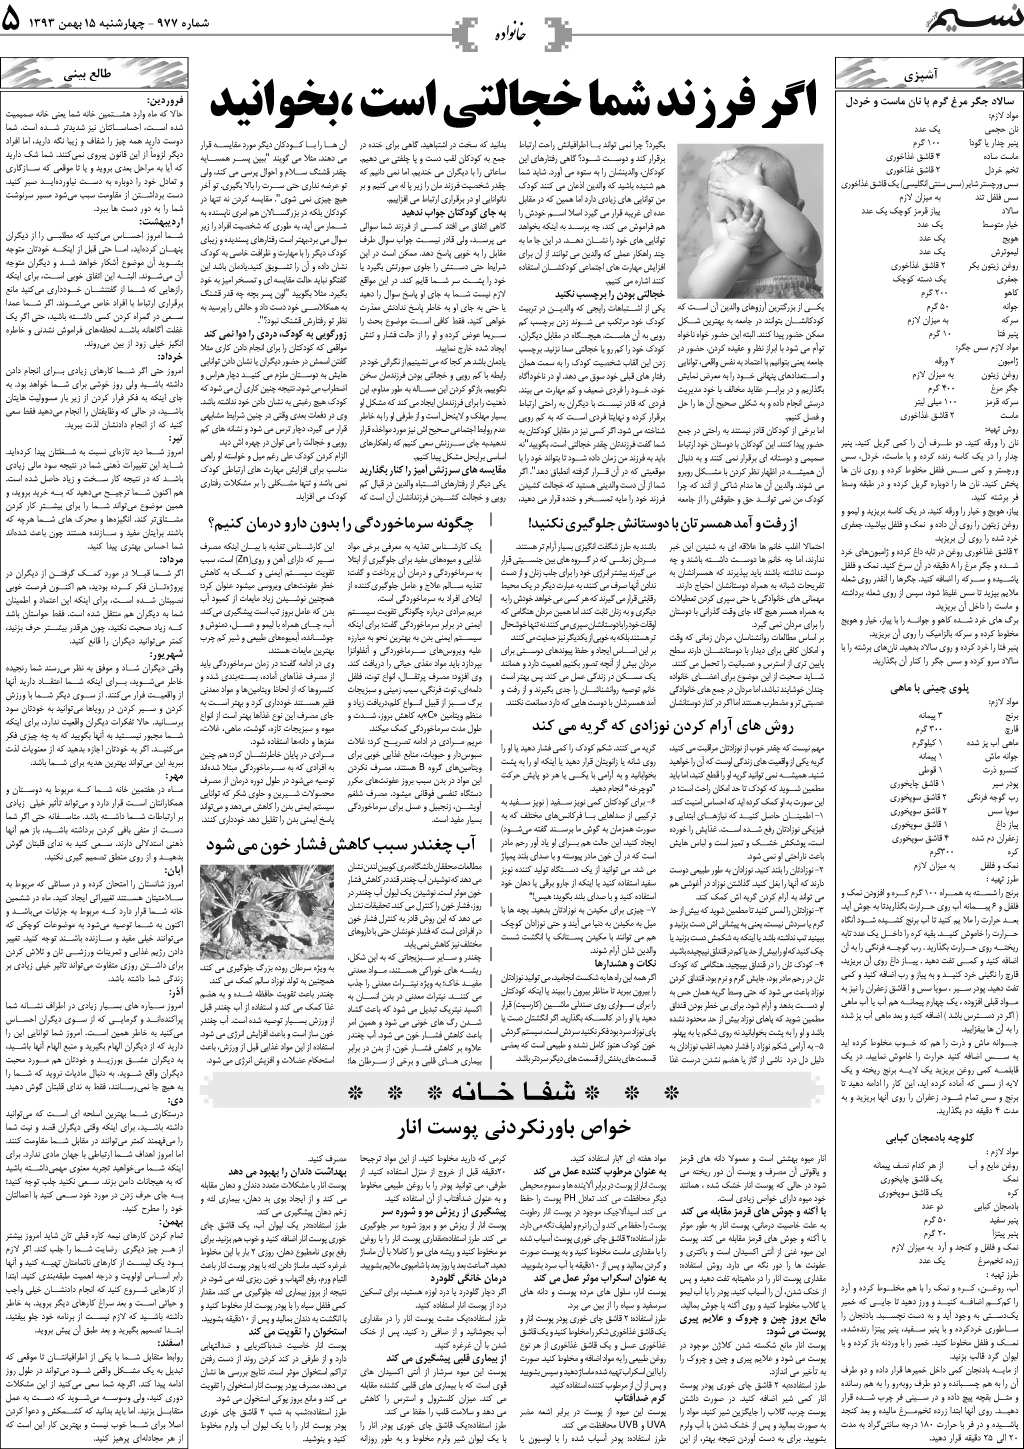 صفحه خانواده روزنامه نسیم شماره 977